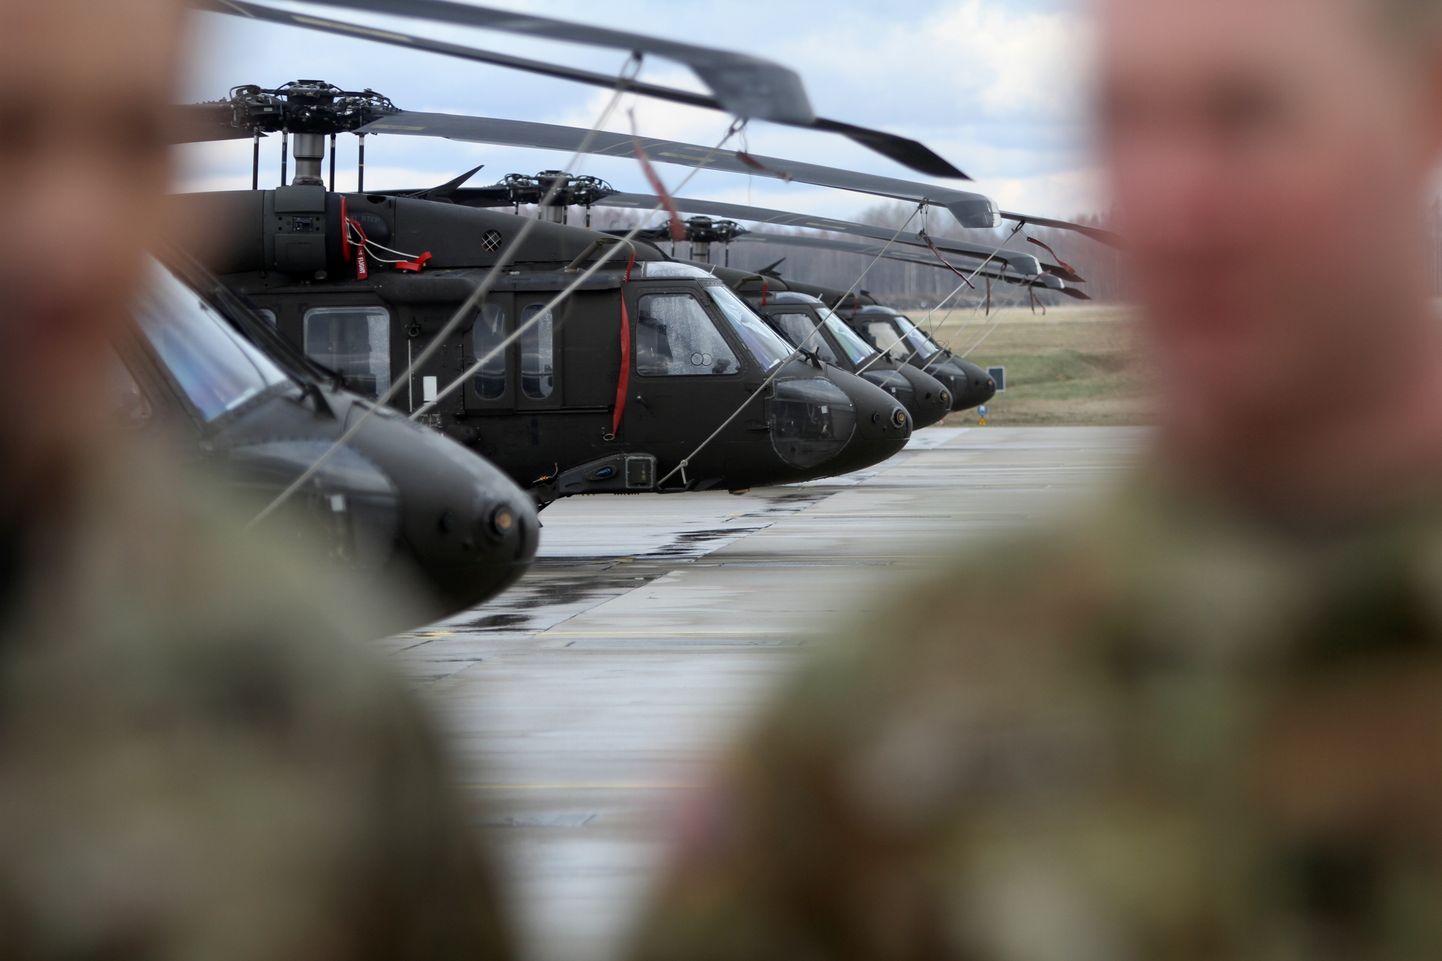 Helikopterid Black Hawk. Foto on illustratiivne.